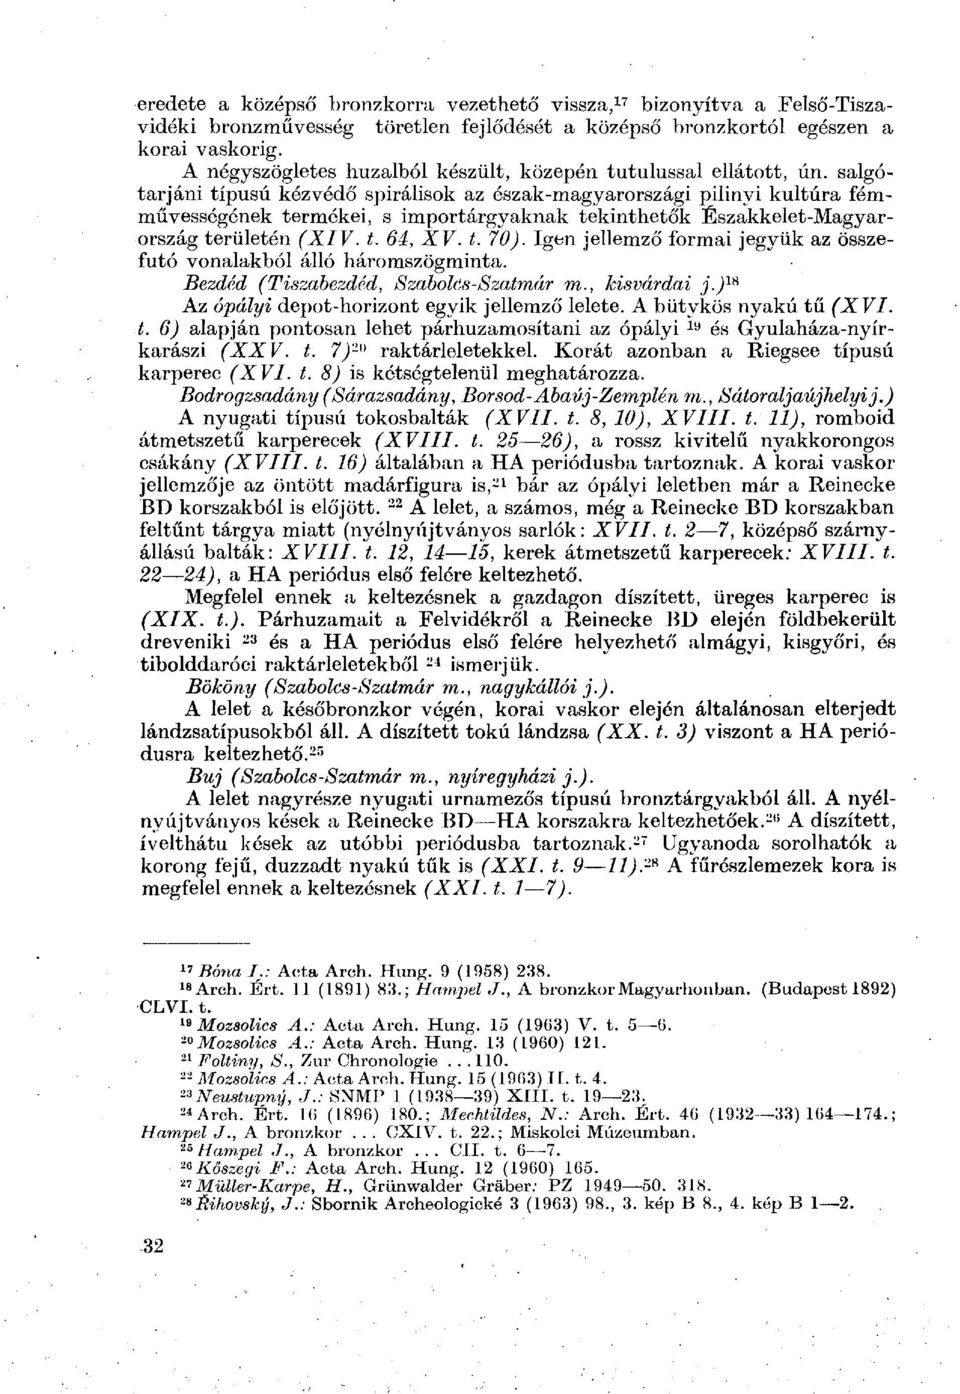 salgótarjáni típusú kézvédő spirálisok az észak-magyarországi pilinyi kultúra fémművességének termékei, s importárgyaknak tekinthetők Északkelet-Magyarország területén (XIV. t. 64, XV. t. 70).